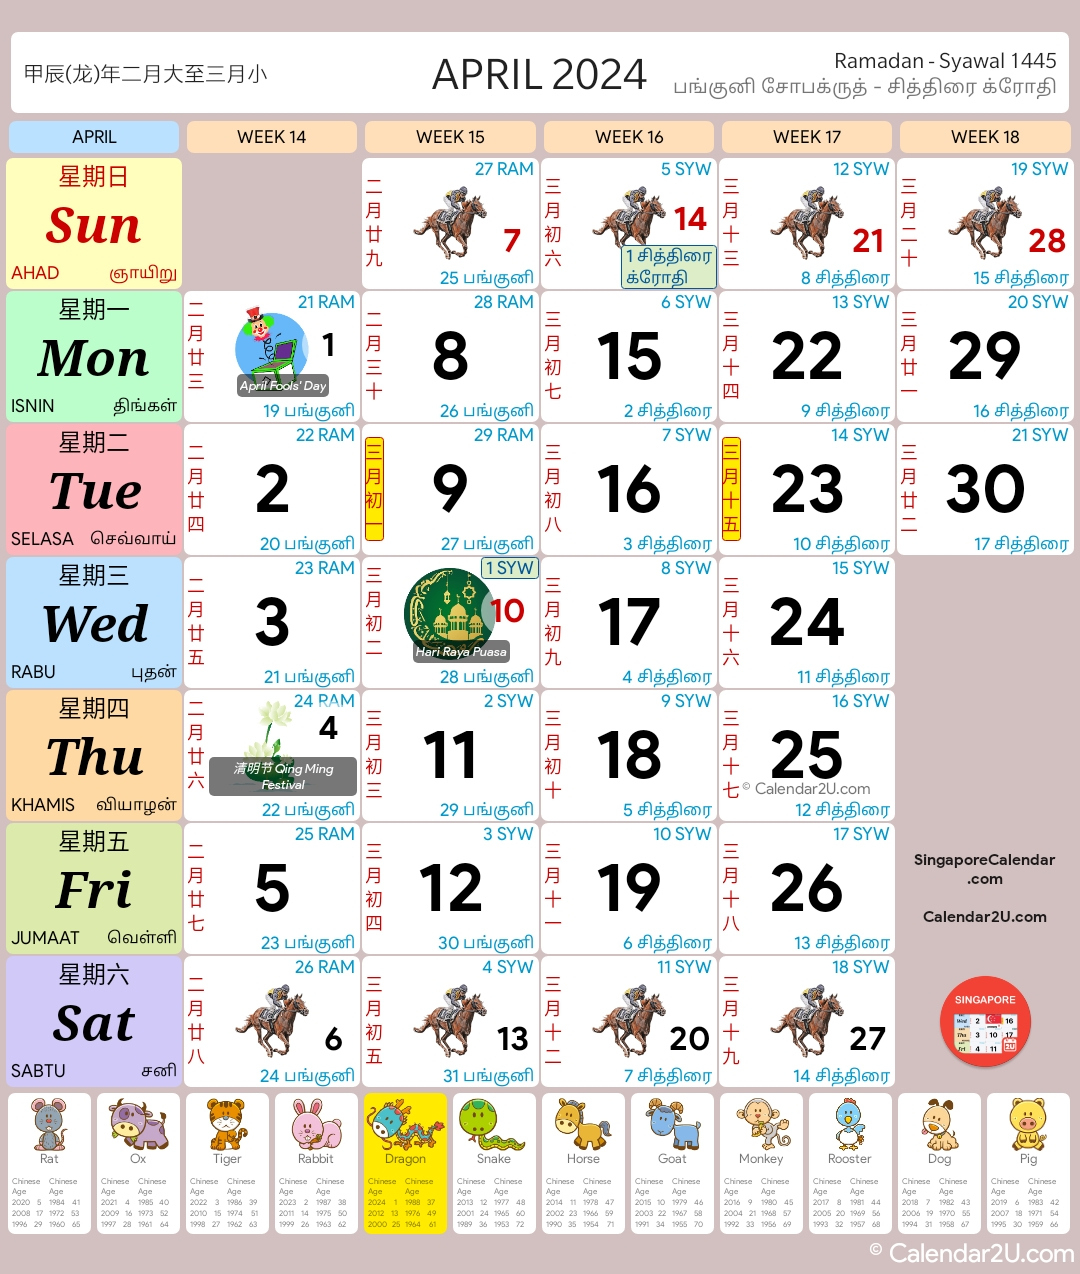 Singapore Calendar Year 2024 - Singapore Calendar | Year 2024 Calendar Singapore